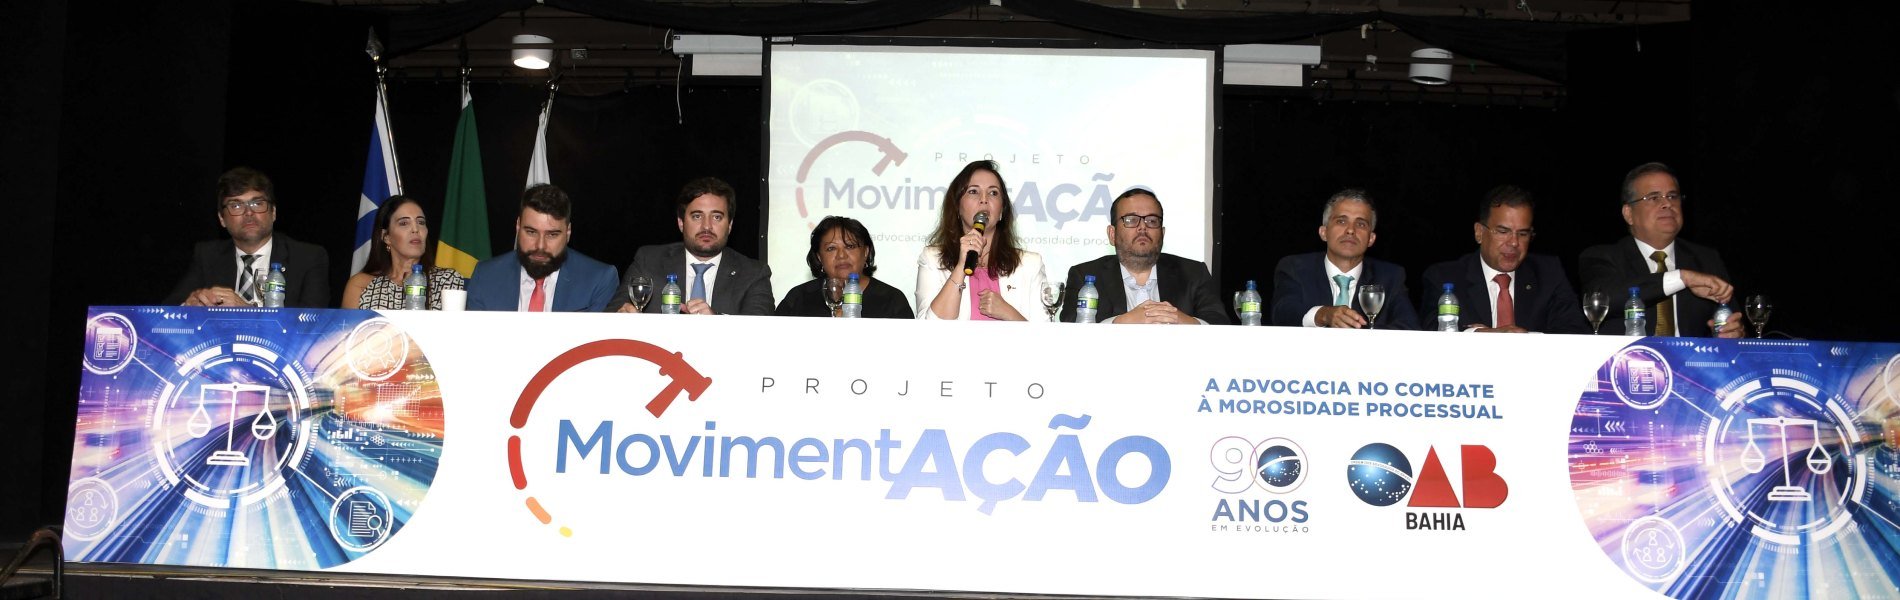 [OAB-BA lança projeto MovimentAção para combater morosidade processual na Bahia]